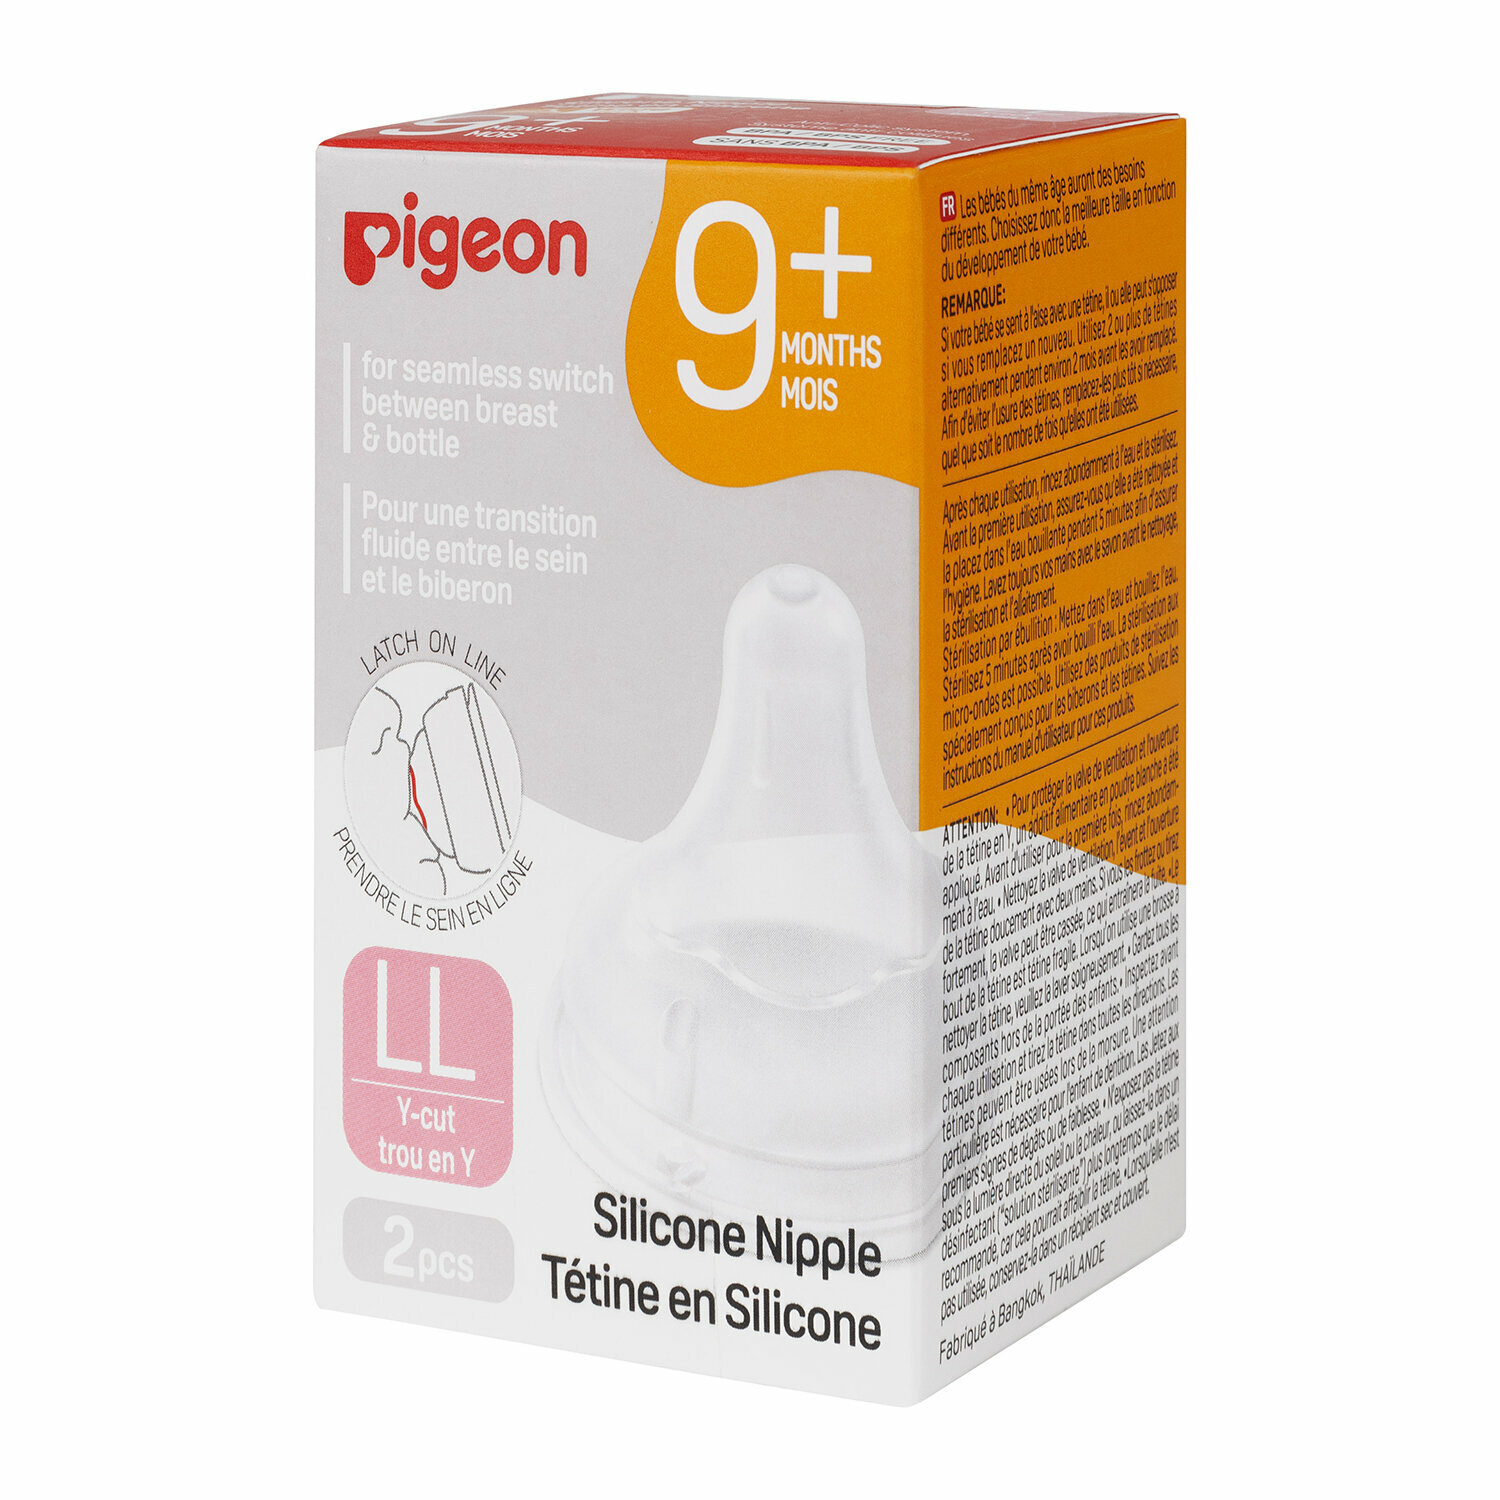 Соска из силикона для бутылочки для кормления, Pigeon, LL (9 мес.), 2шт